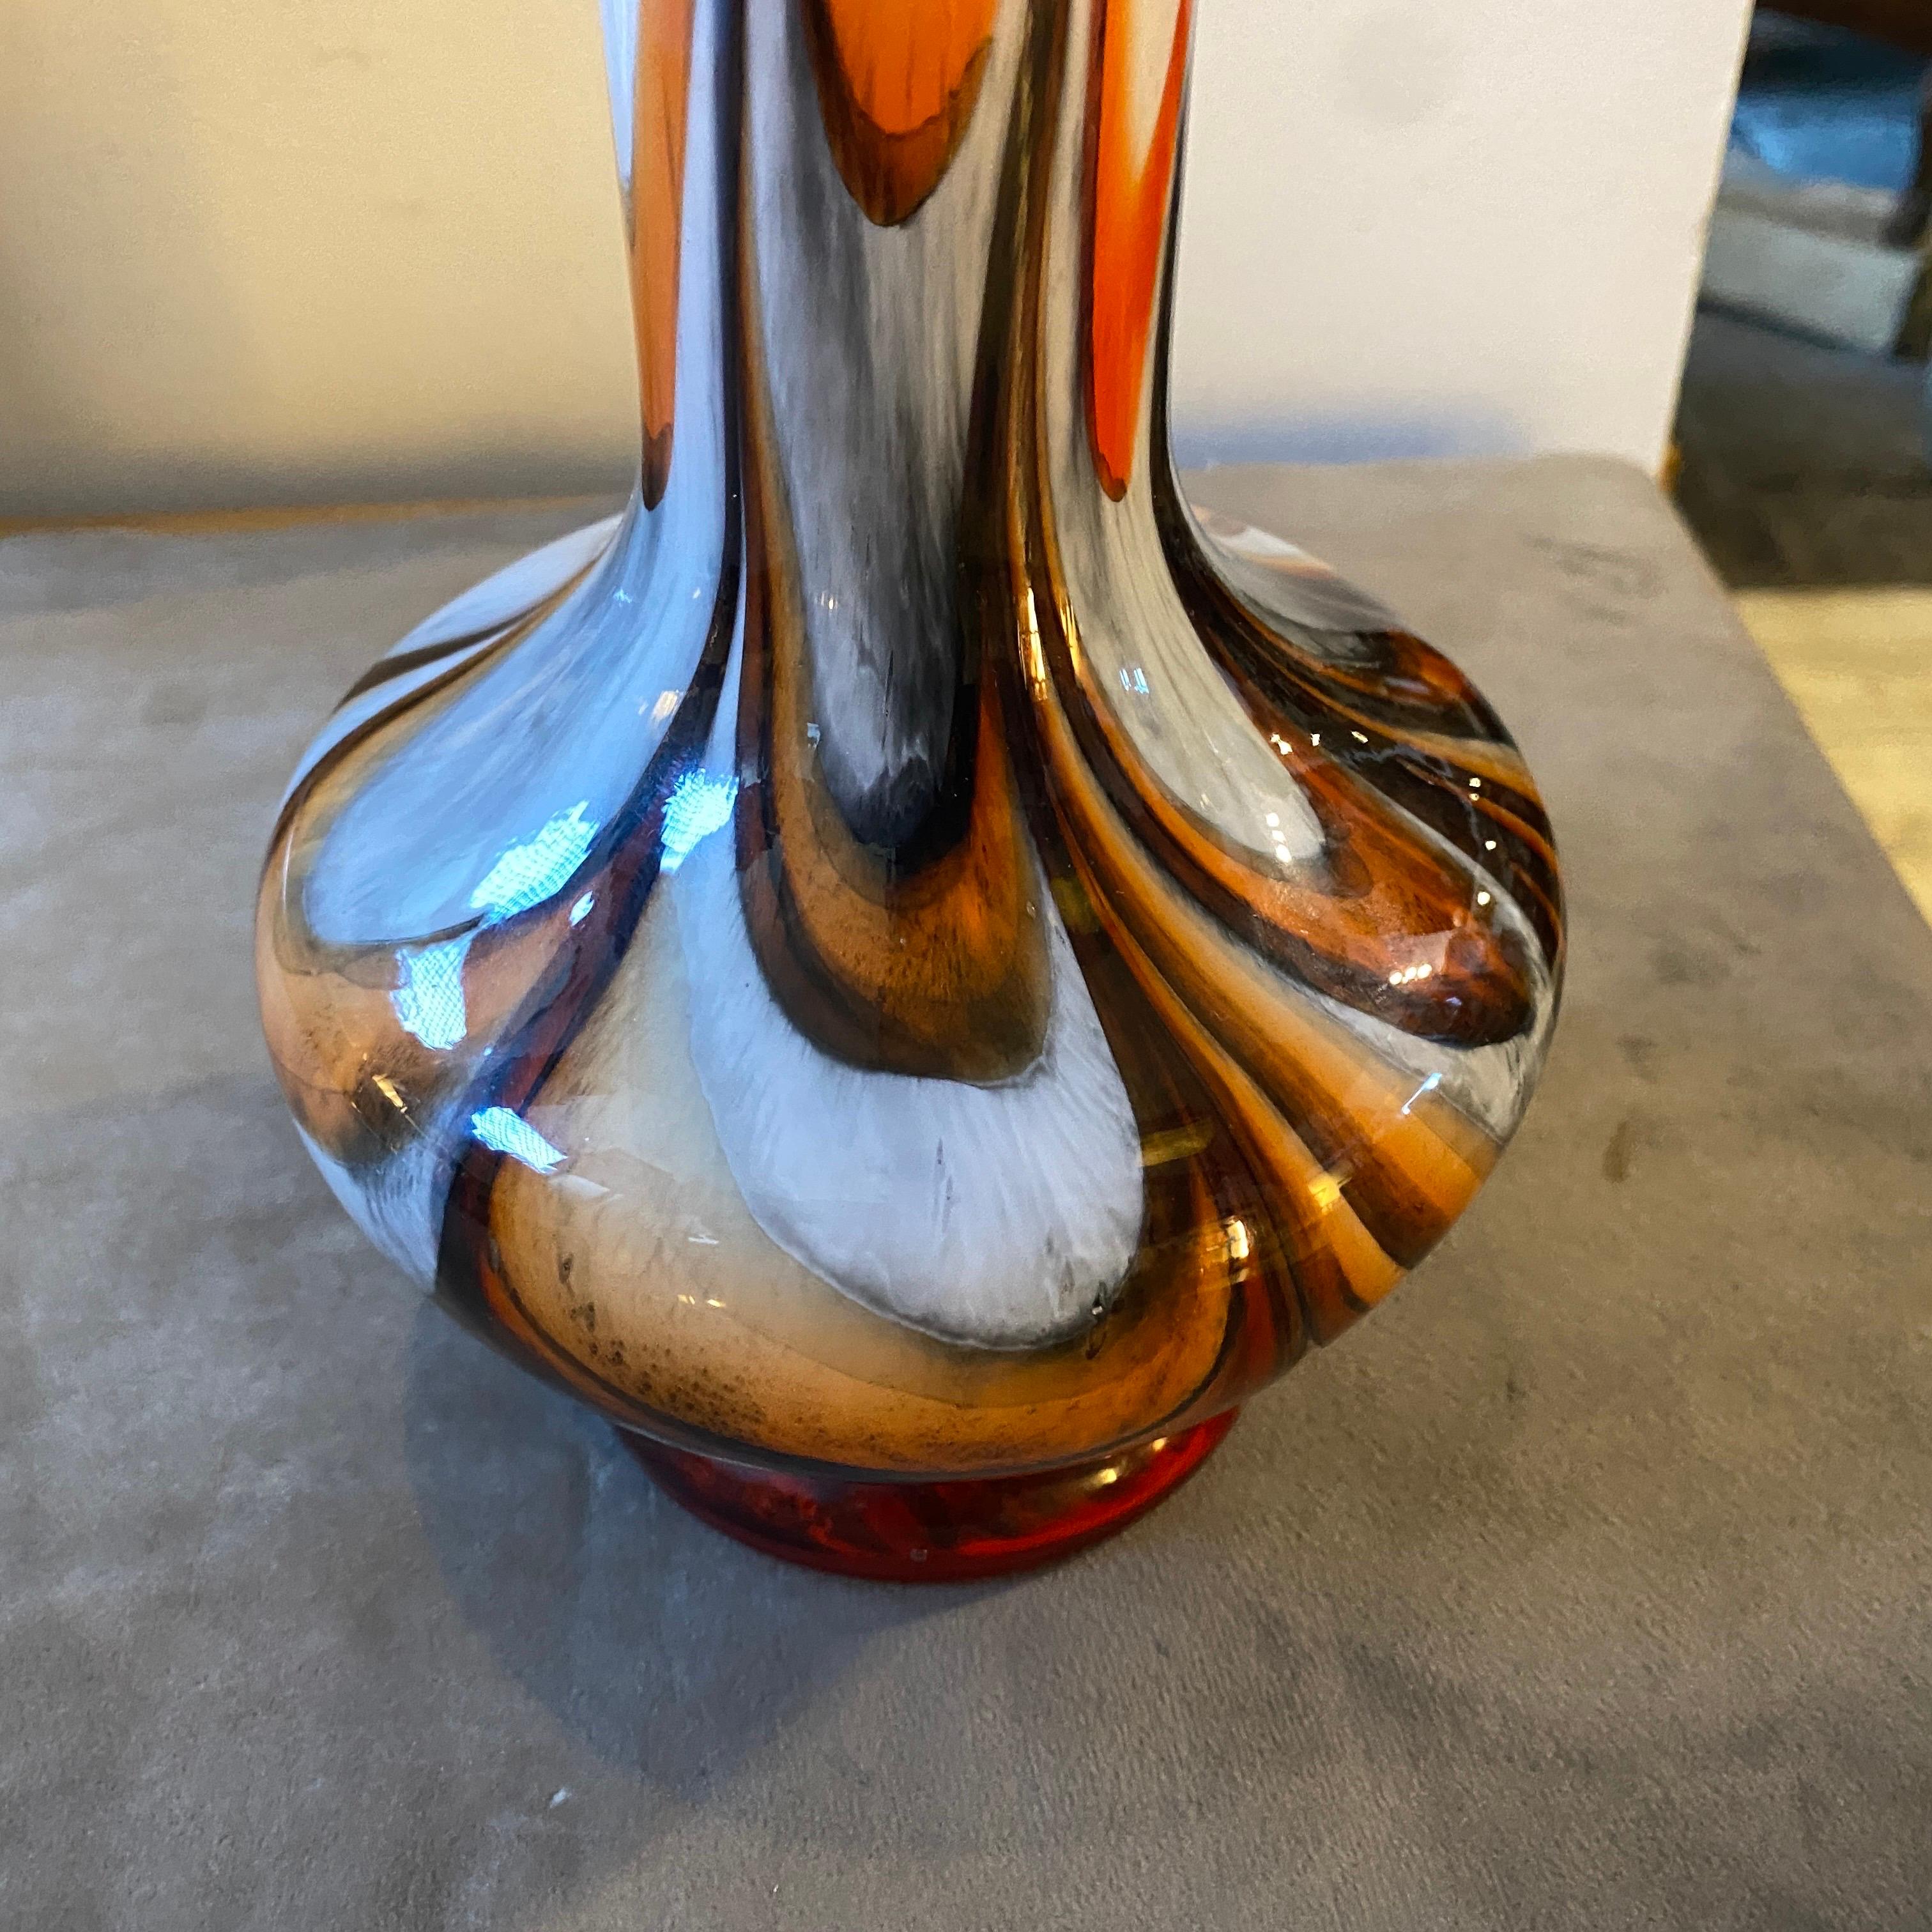 Un vase iconique en verre opalin orange, brun et noir, conçu et fabriqué en Italie, en très bon état. Ce vase incarne l'esthétique audacieuse et futuriste caractéristique de l'ère spatiale. Carlo Moretti, verrier italien, était connu pour son